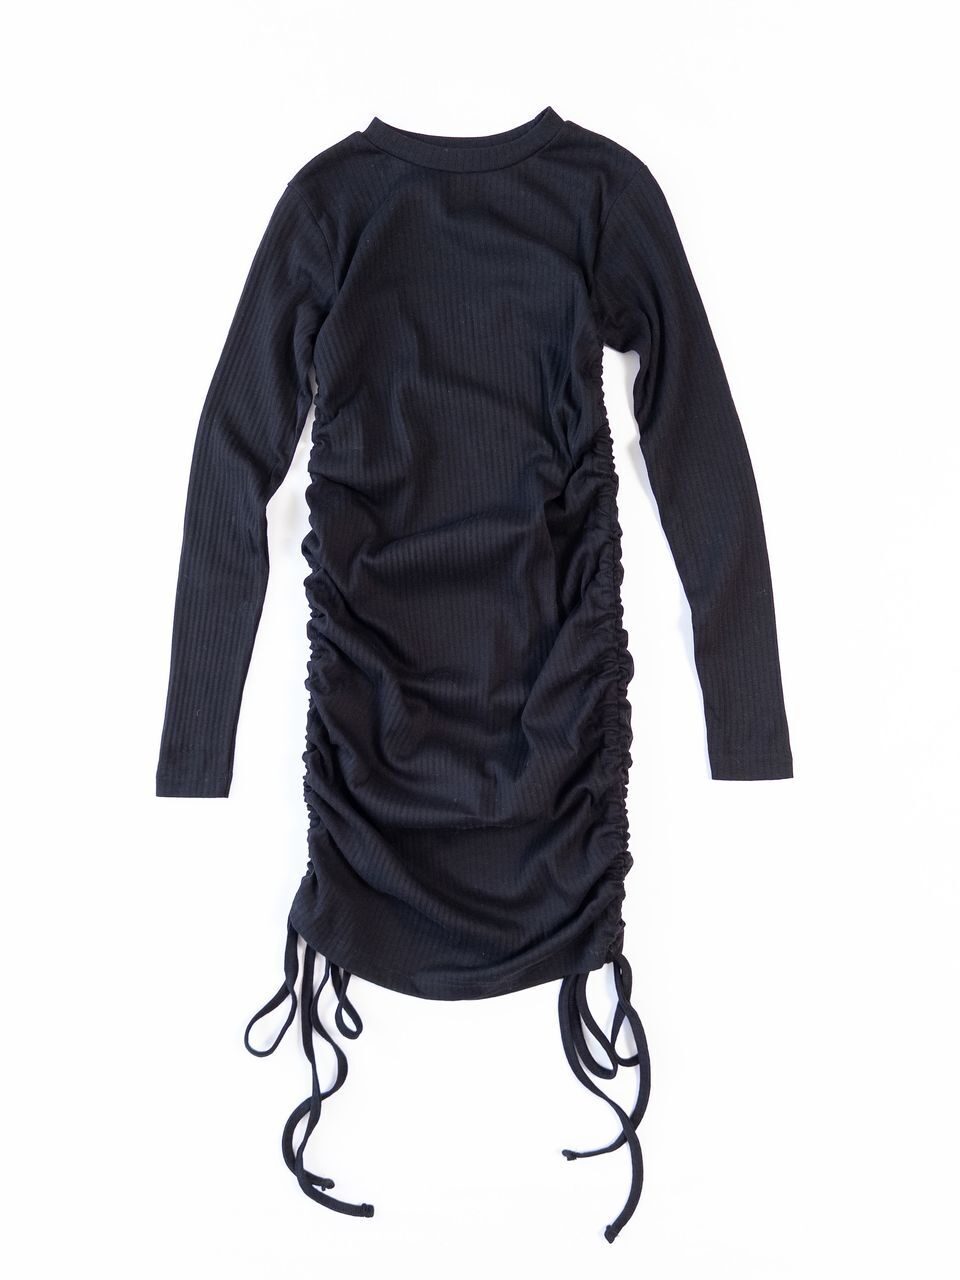 Платье в рубчик со сборками по бокам цвет черный размер EUR 34 (rus 40) MISSGUIDED